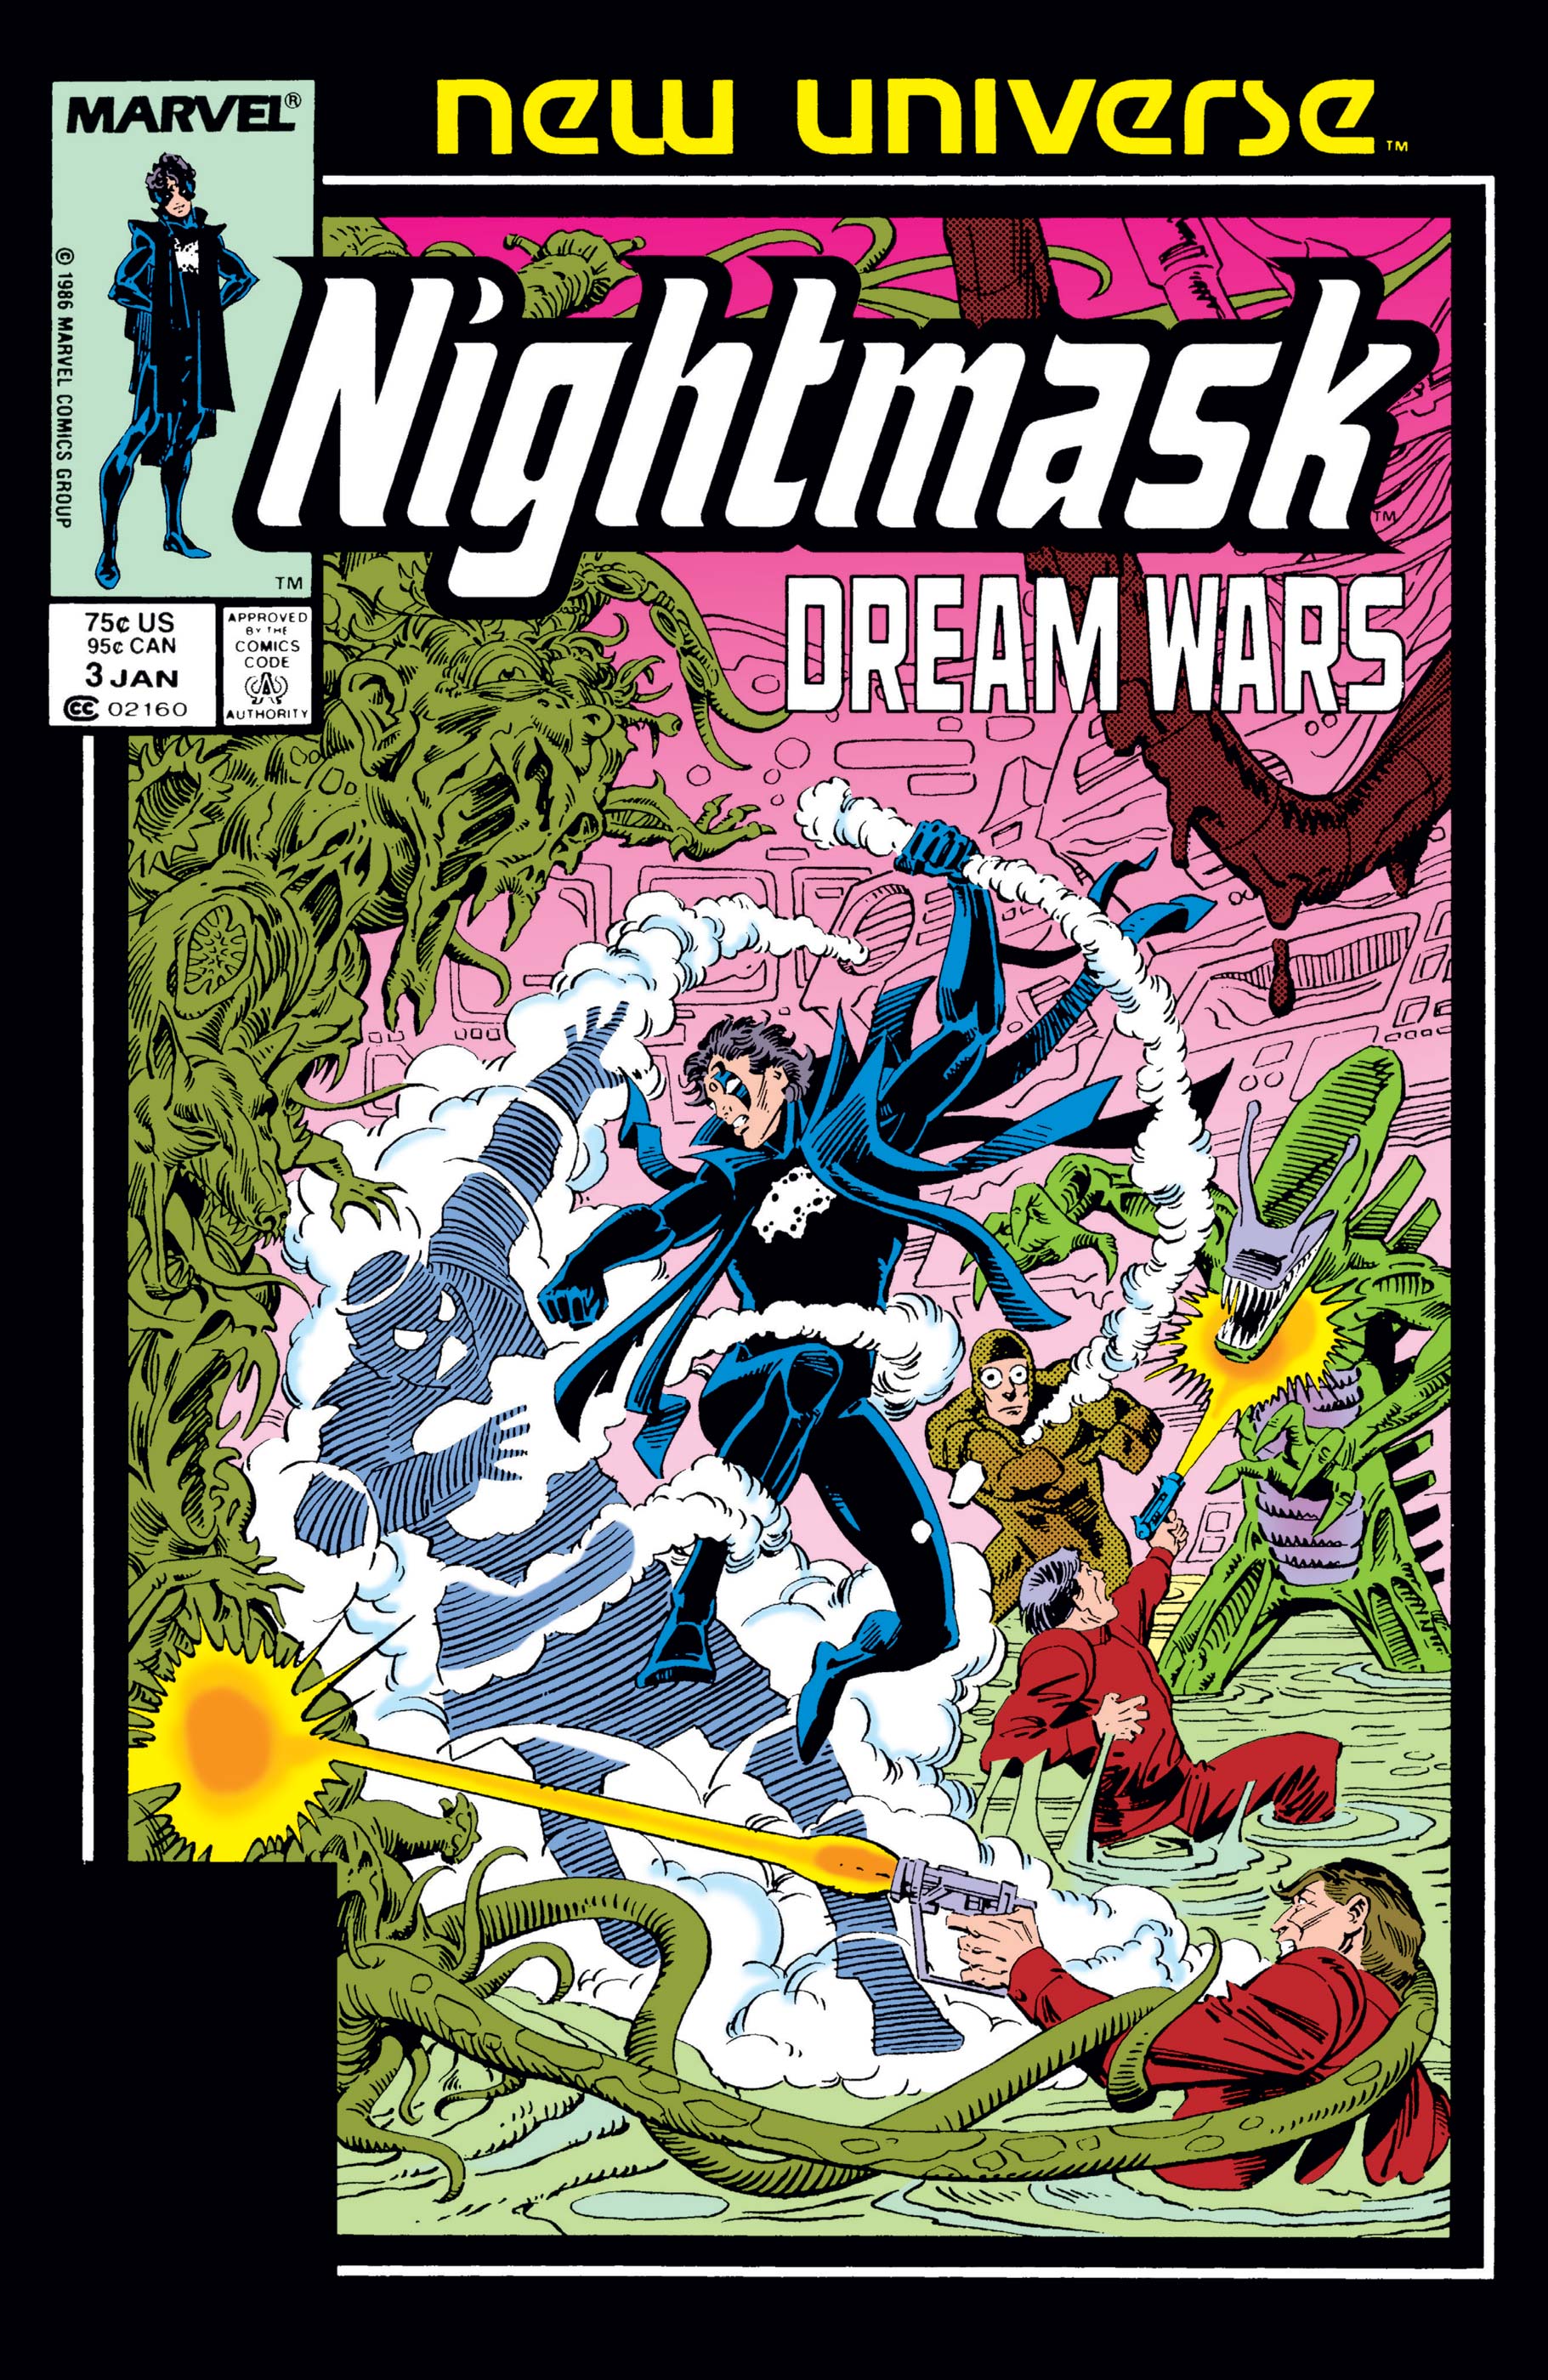 Nightmask (1986) #3